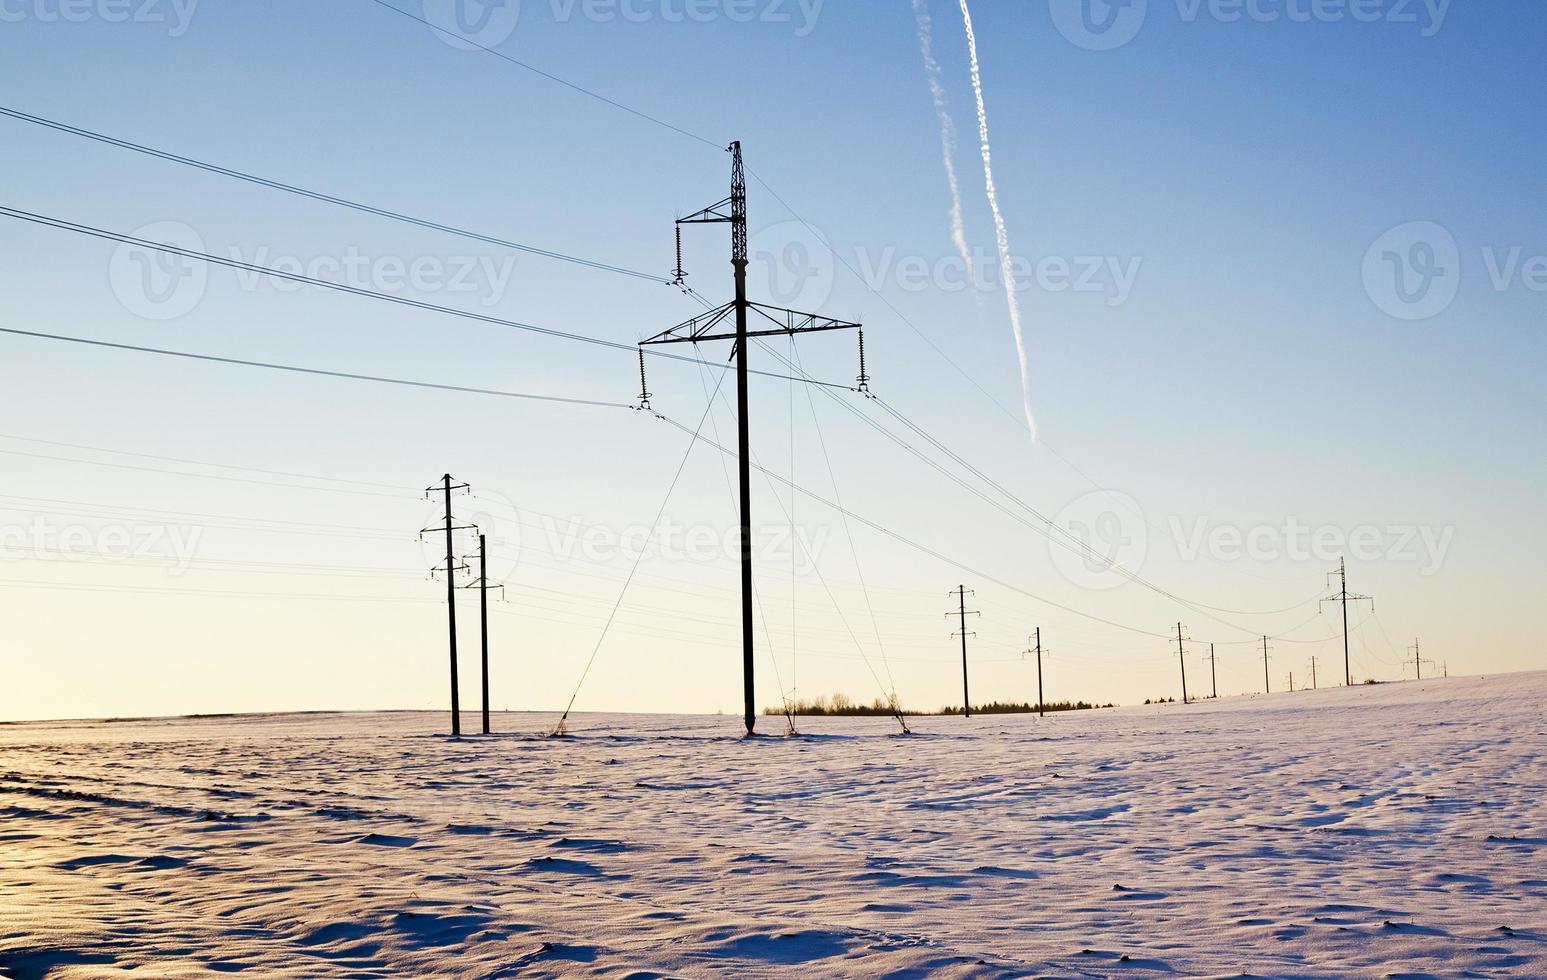 colonnes dans le champ - les colonnes électriques qui se trouvent dans le champ. l'hiver. photo